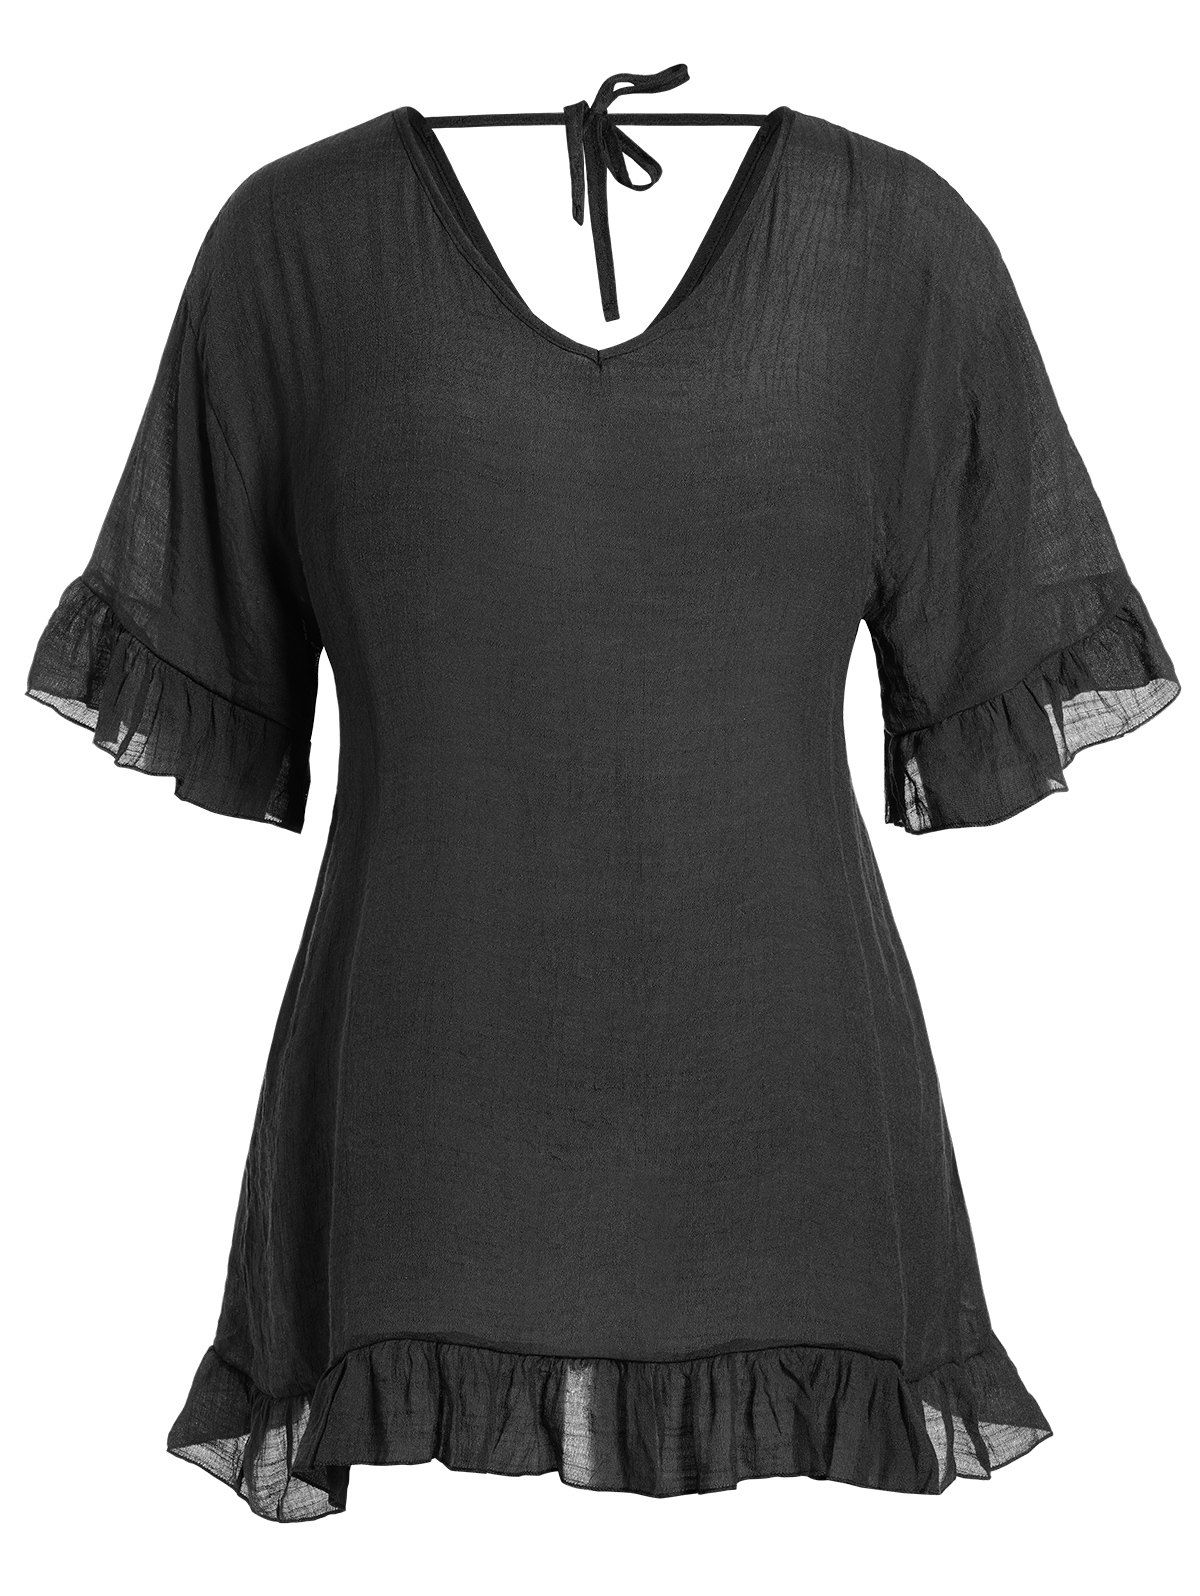 Plus Size Cover-up Dress Plain Color Flounce Hem Mini Beach Cover-up Dress - BLACK 2XL